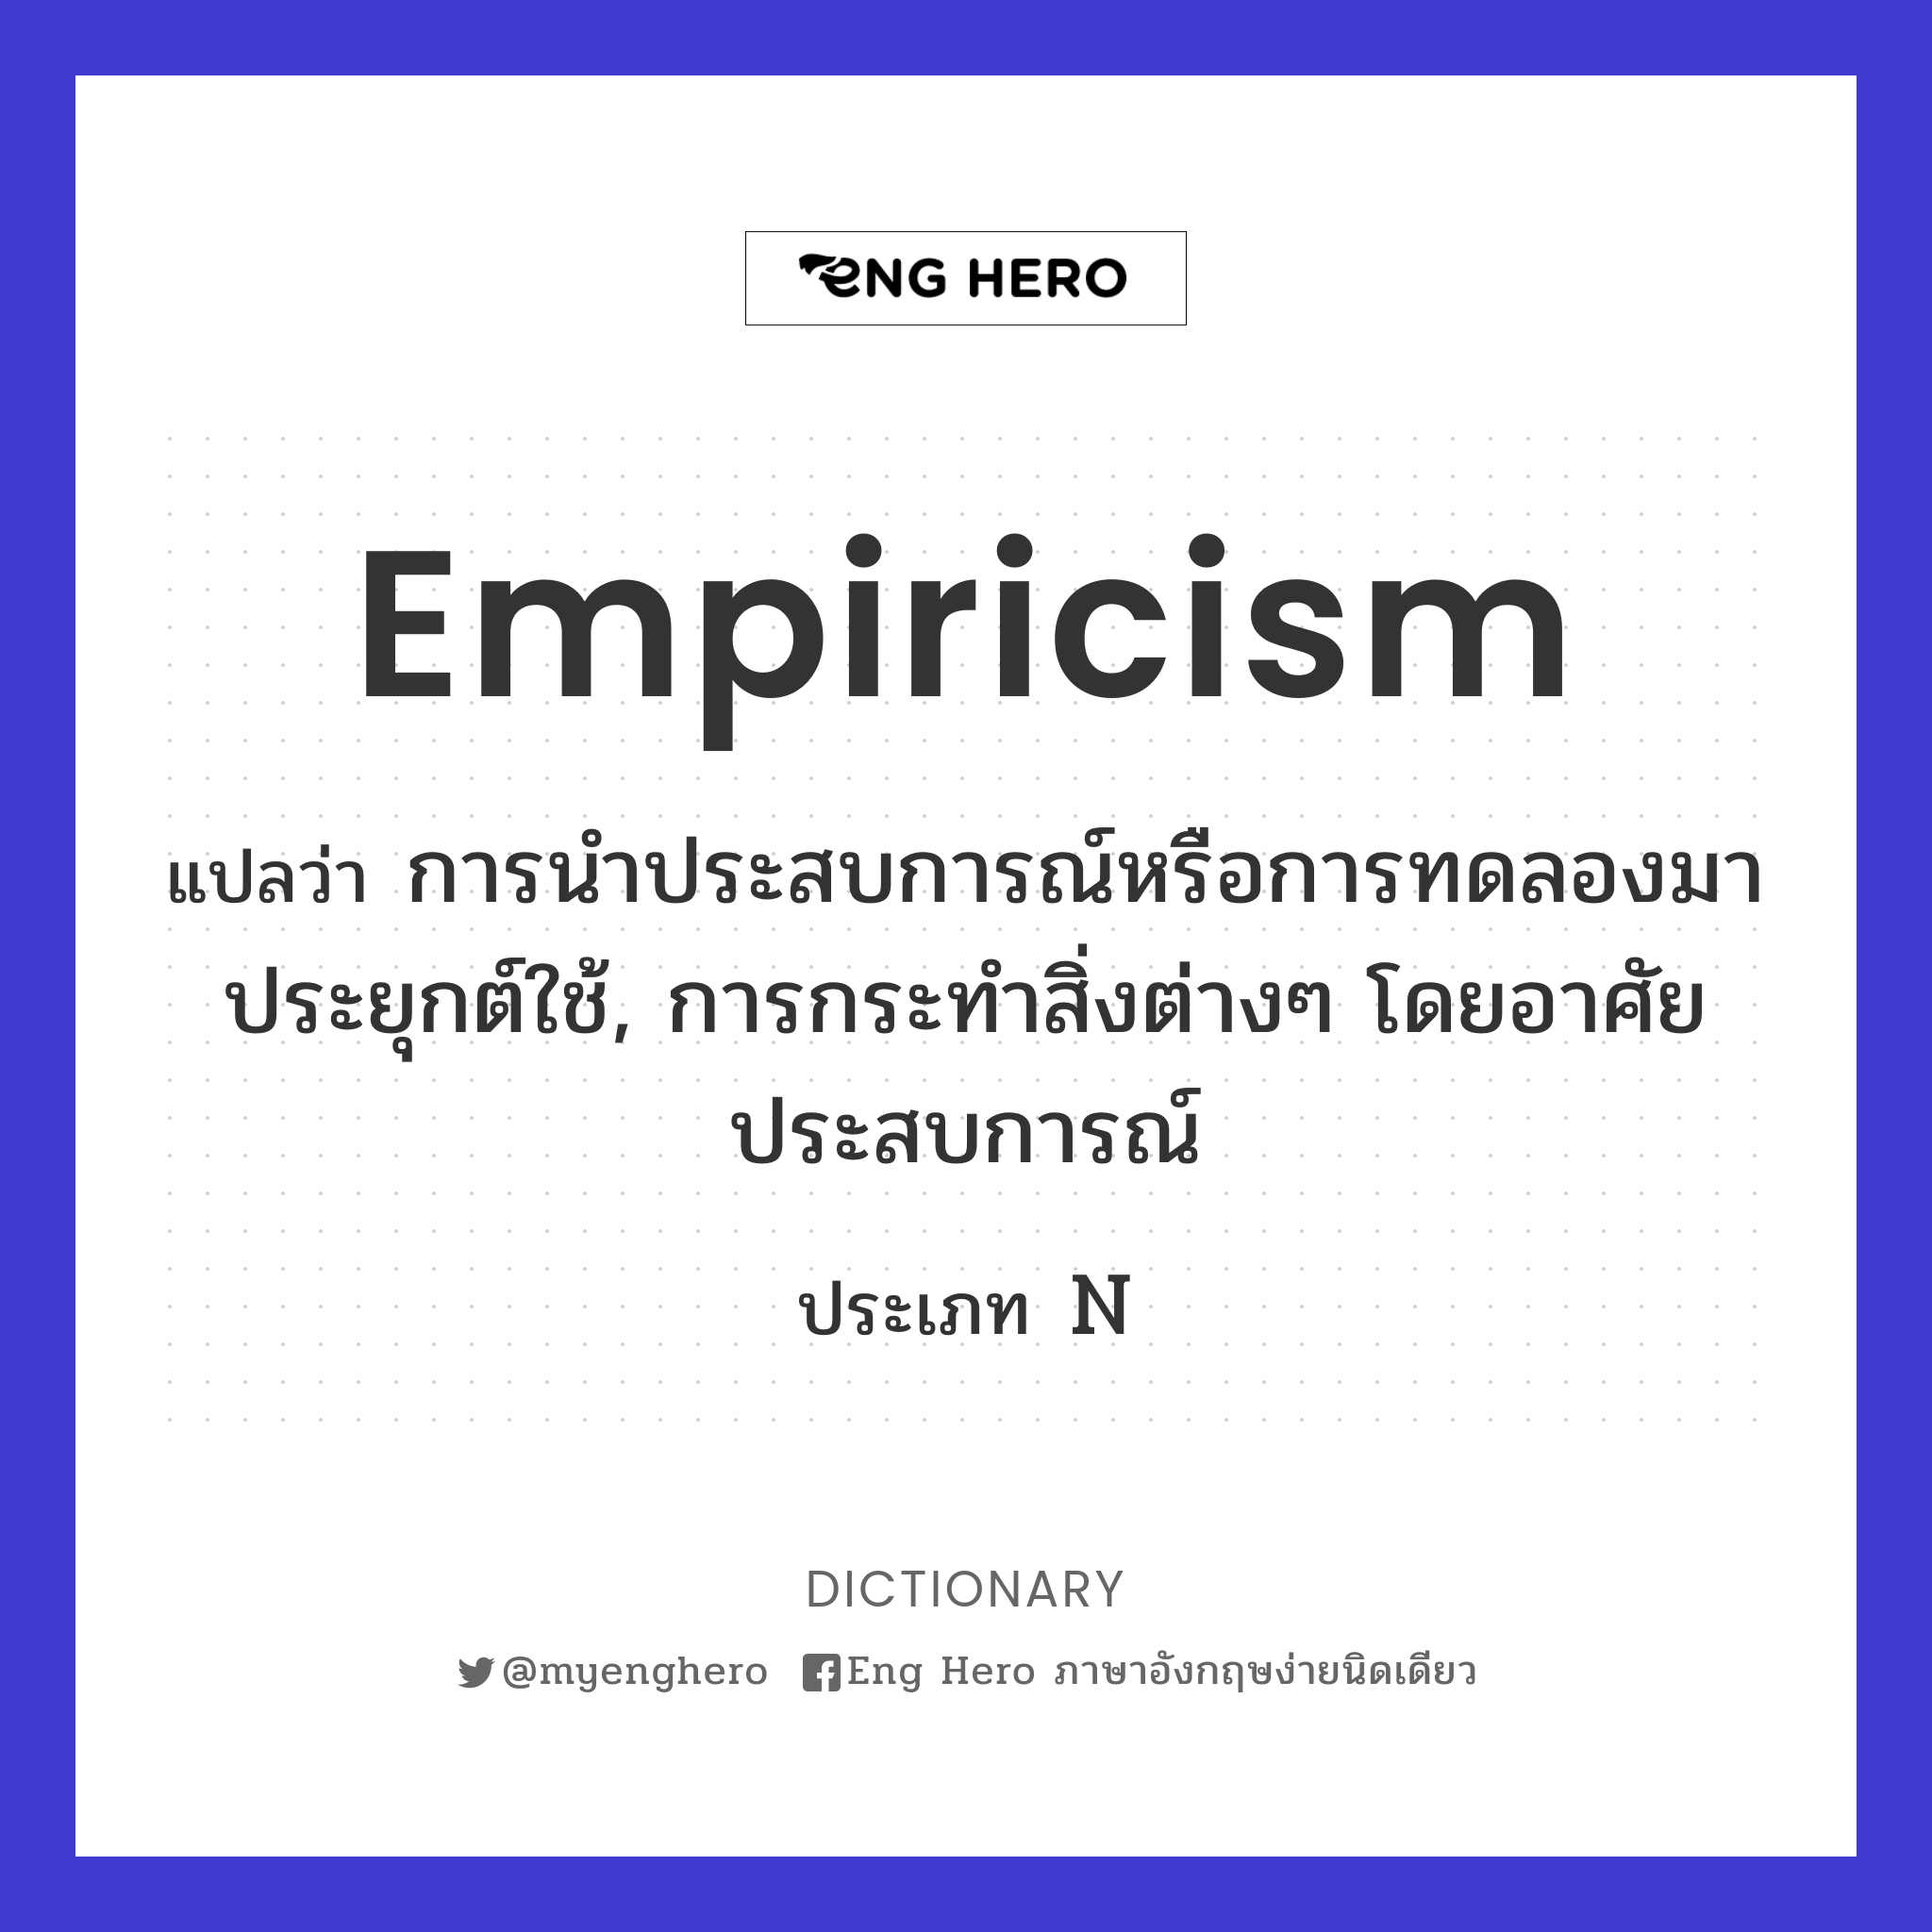 empiricism